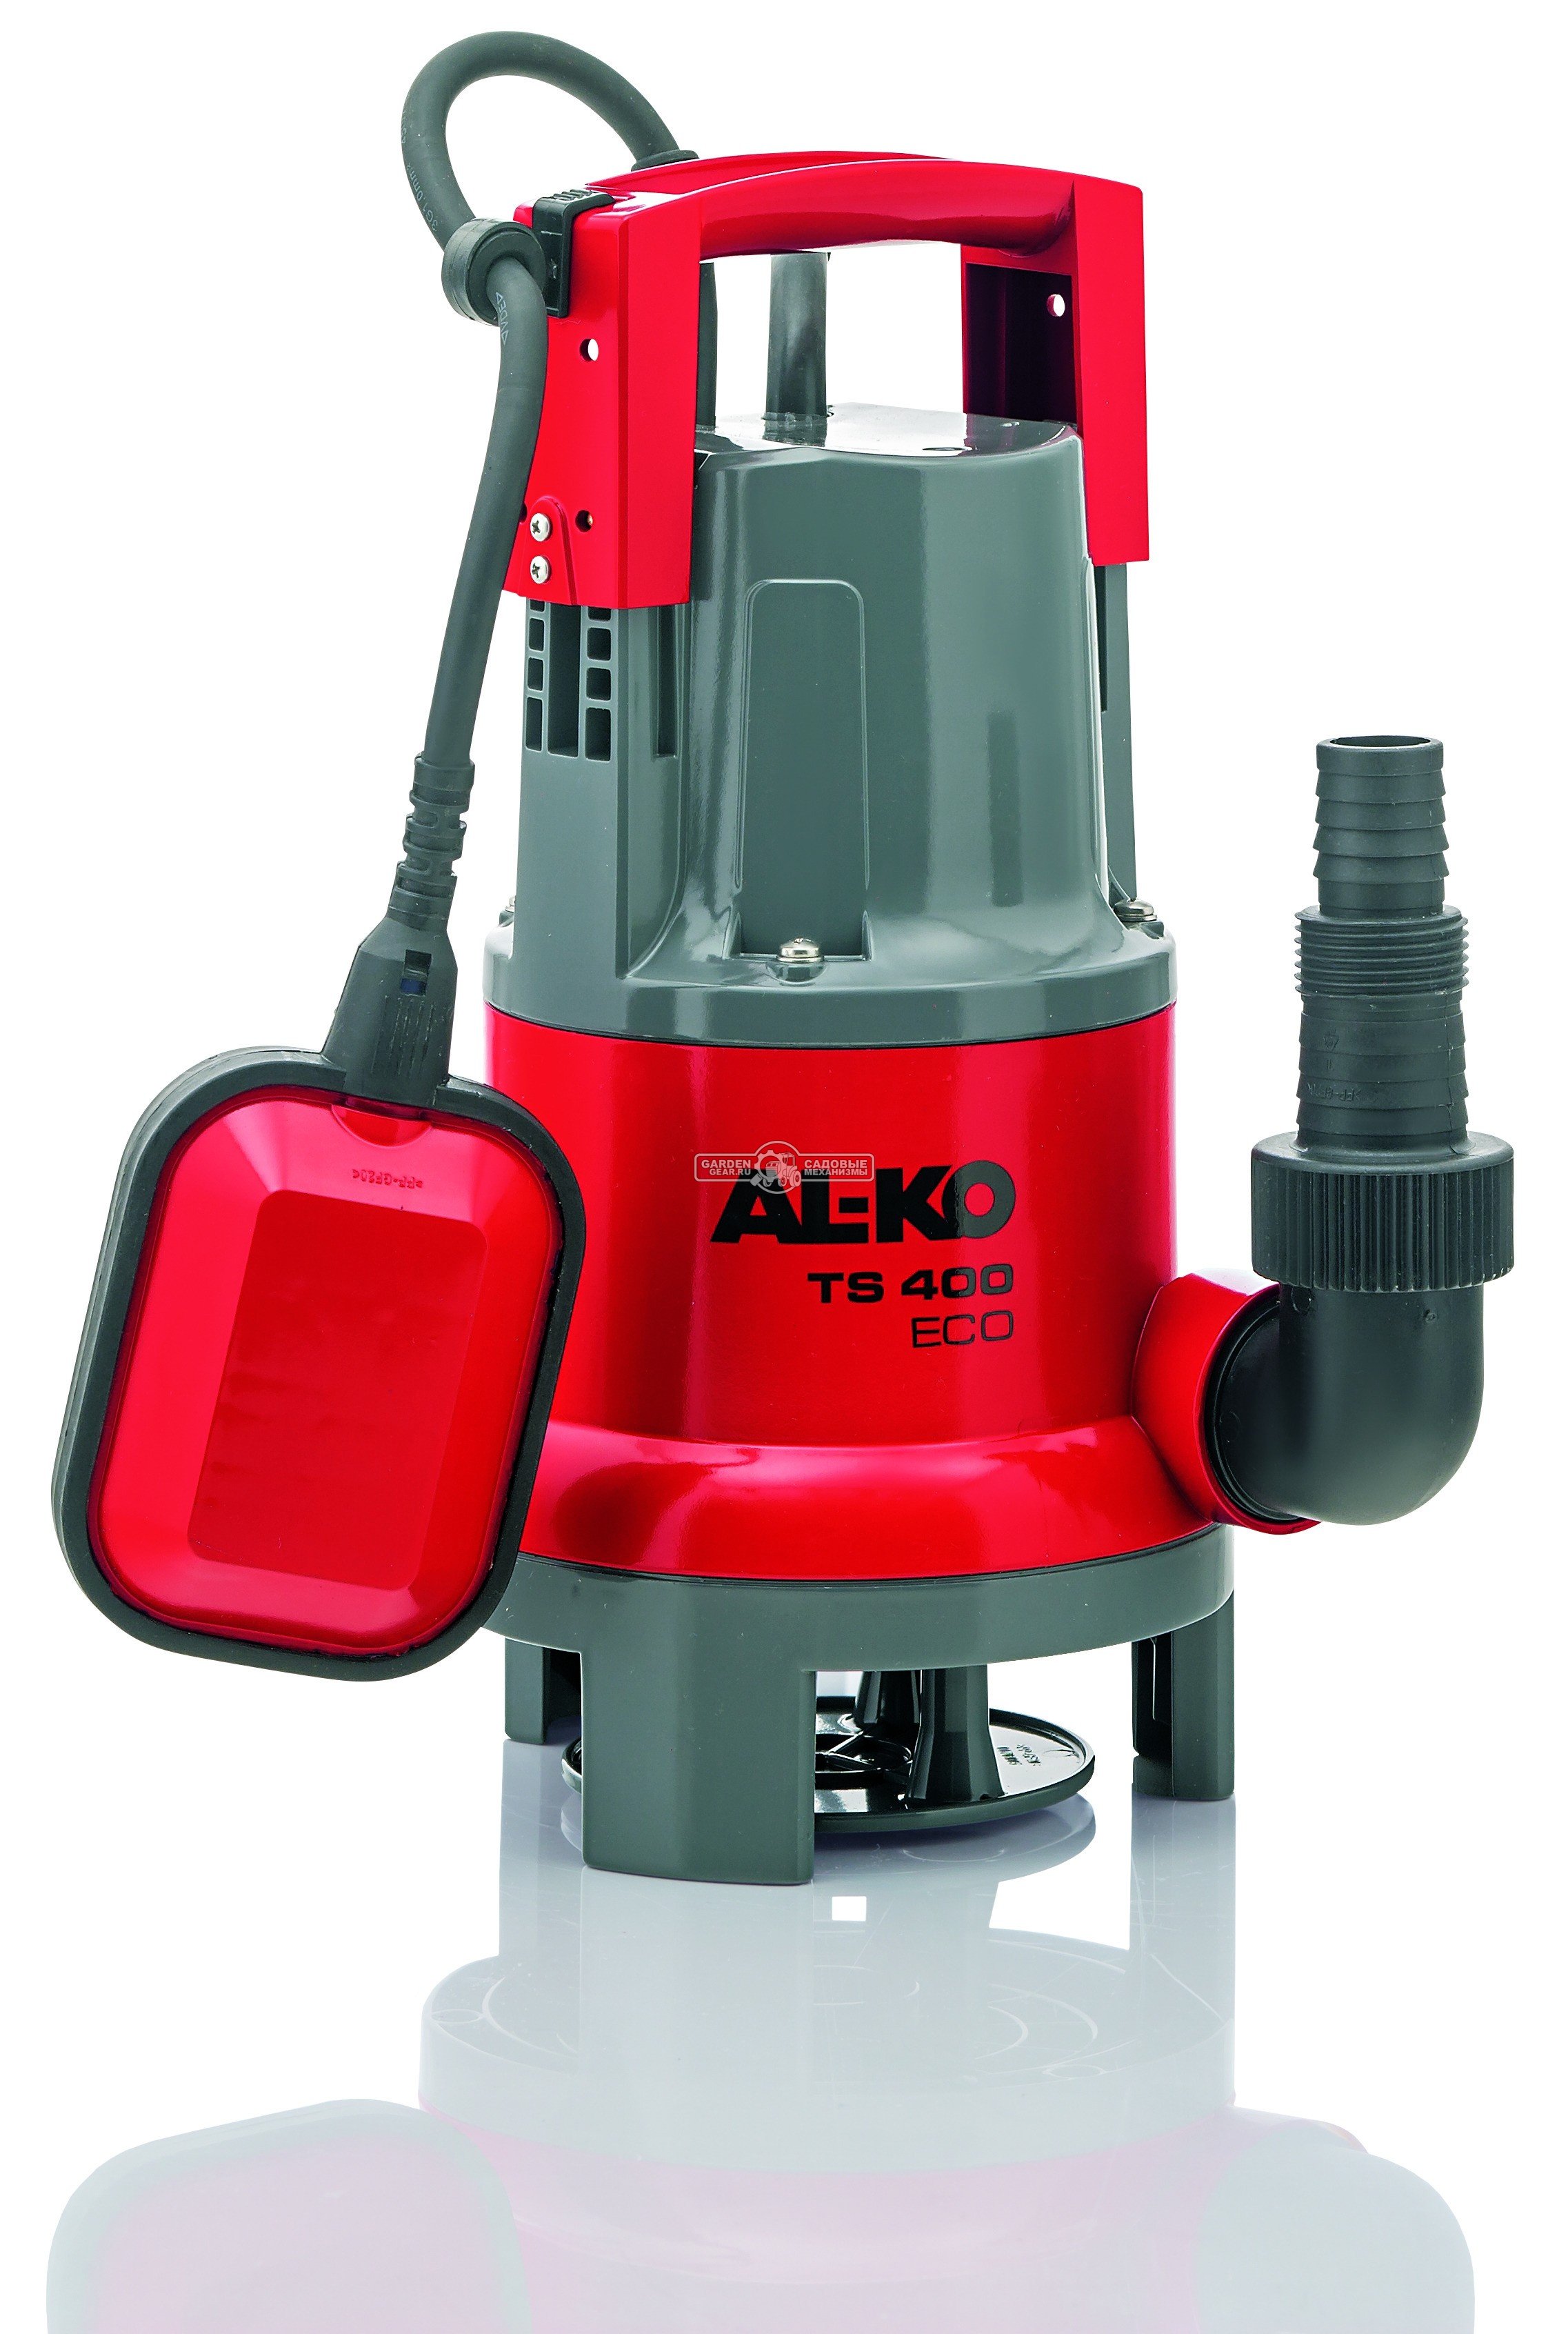 Дренажный насос Al-ko TS 400 Eco для грязной воды (PRC, 451 Вт., 6 м, 8 м3/час, 3,8 кг.)